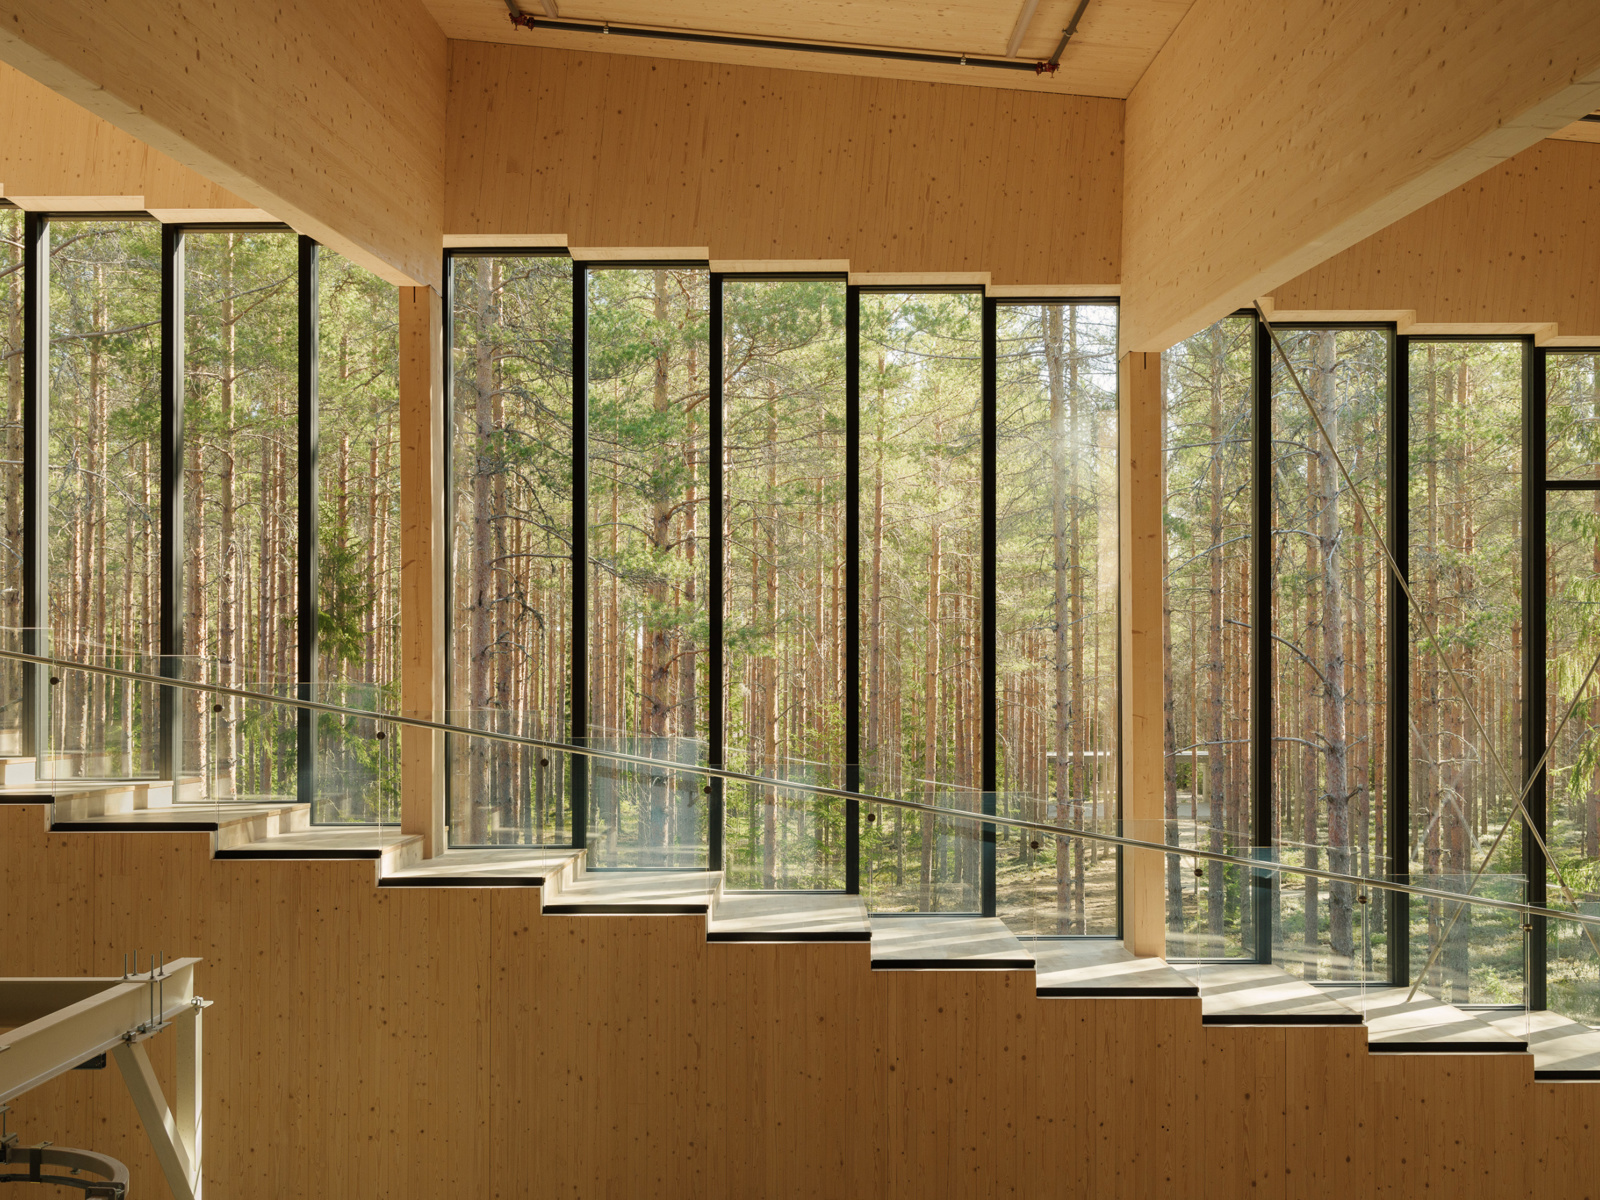 Interiør i treverk, smale vertikale vinduer dekker veggen og man kan se skogen utenfor. Foto.